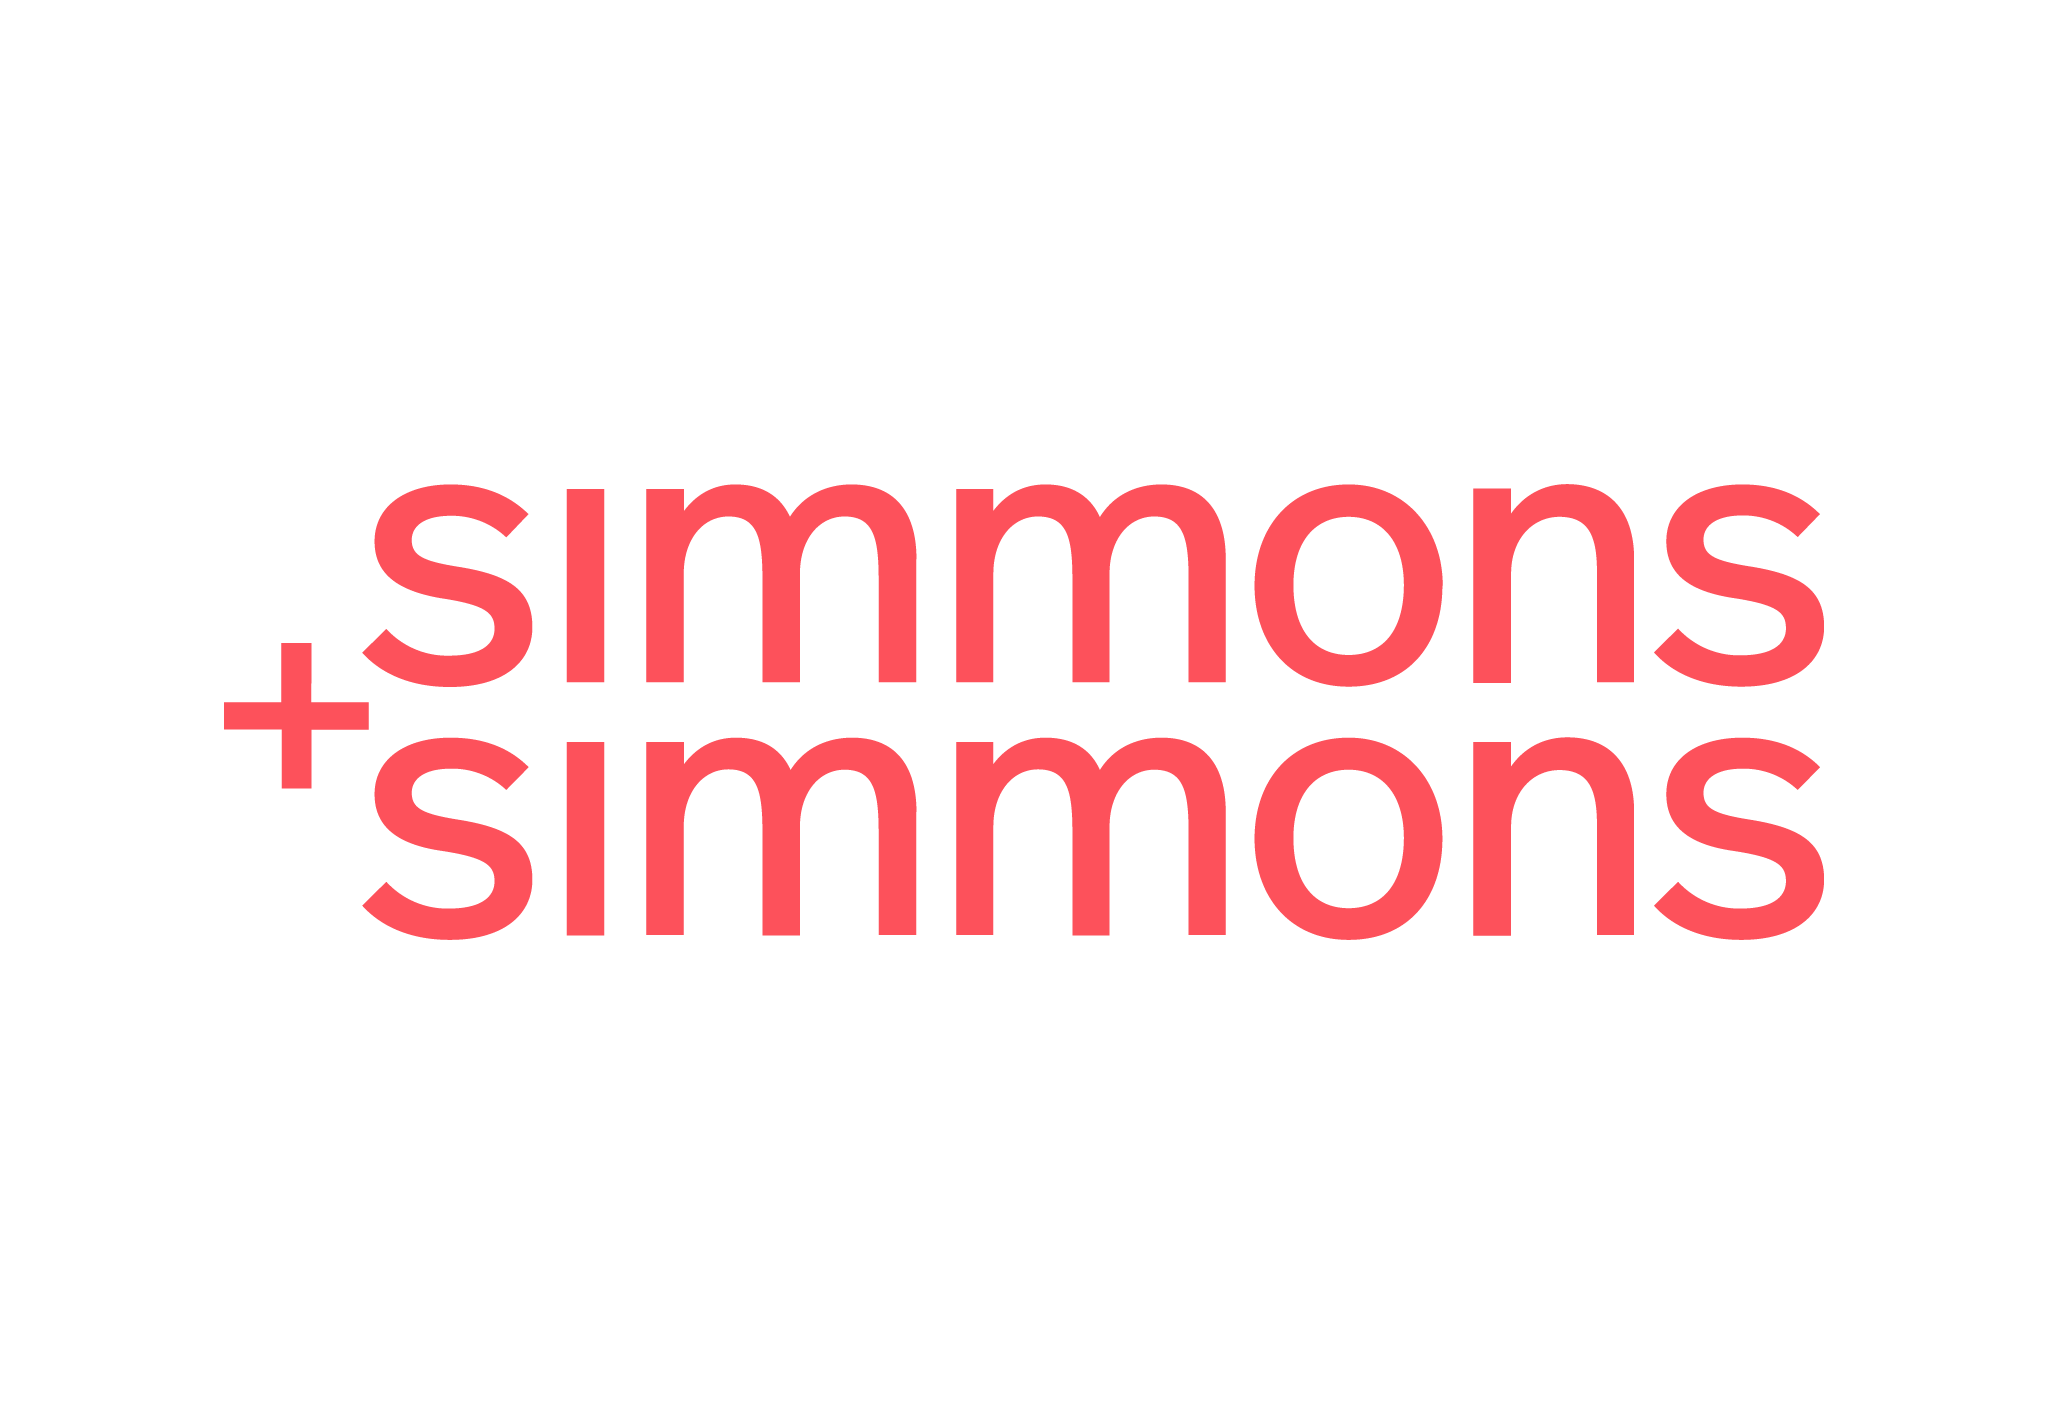 Simmons & Simmons Logo